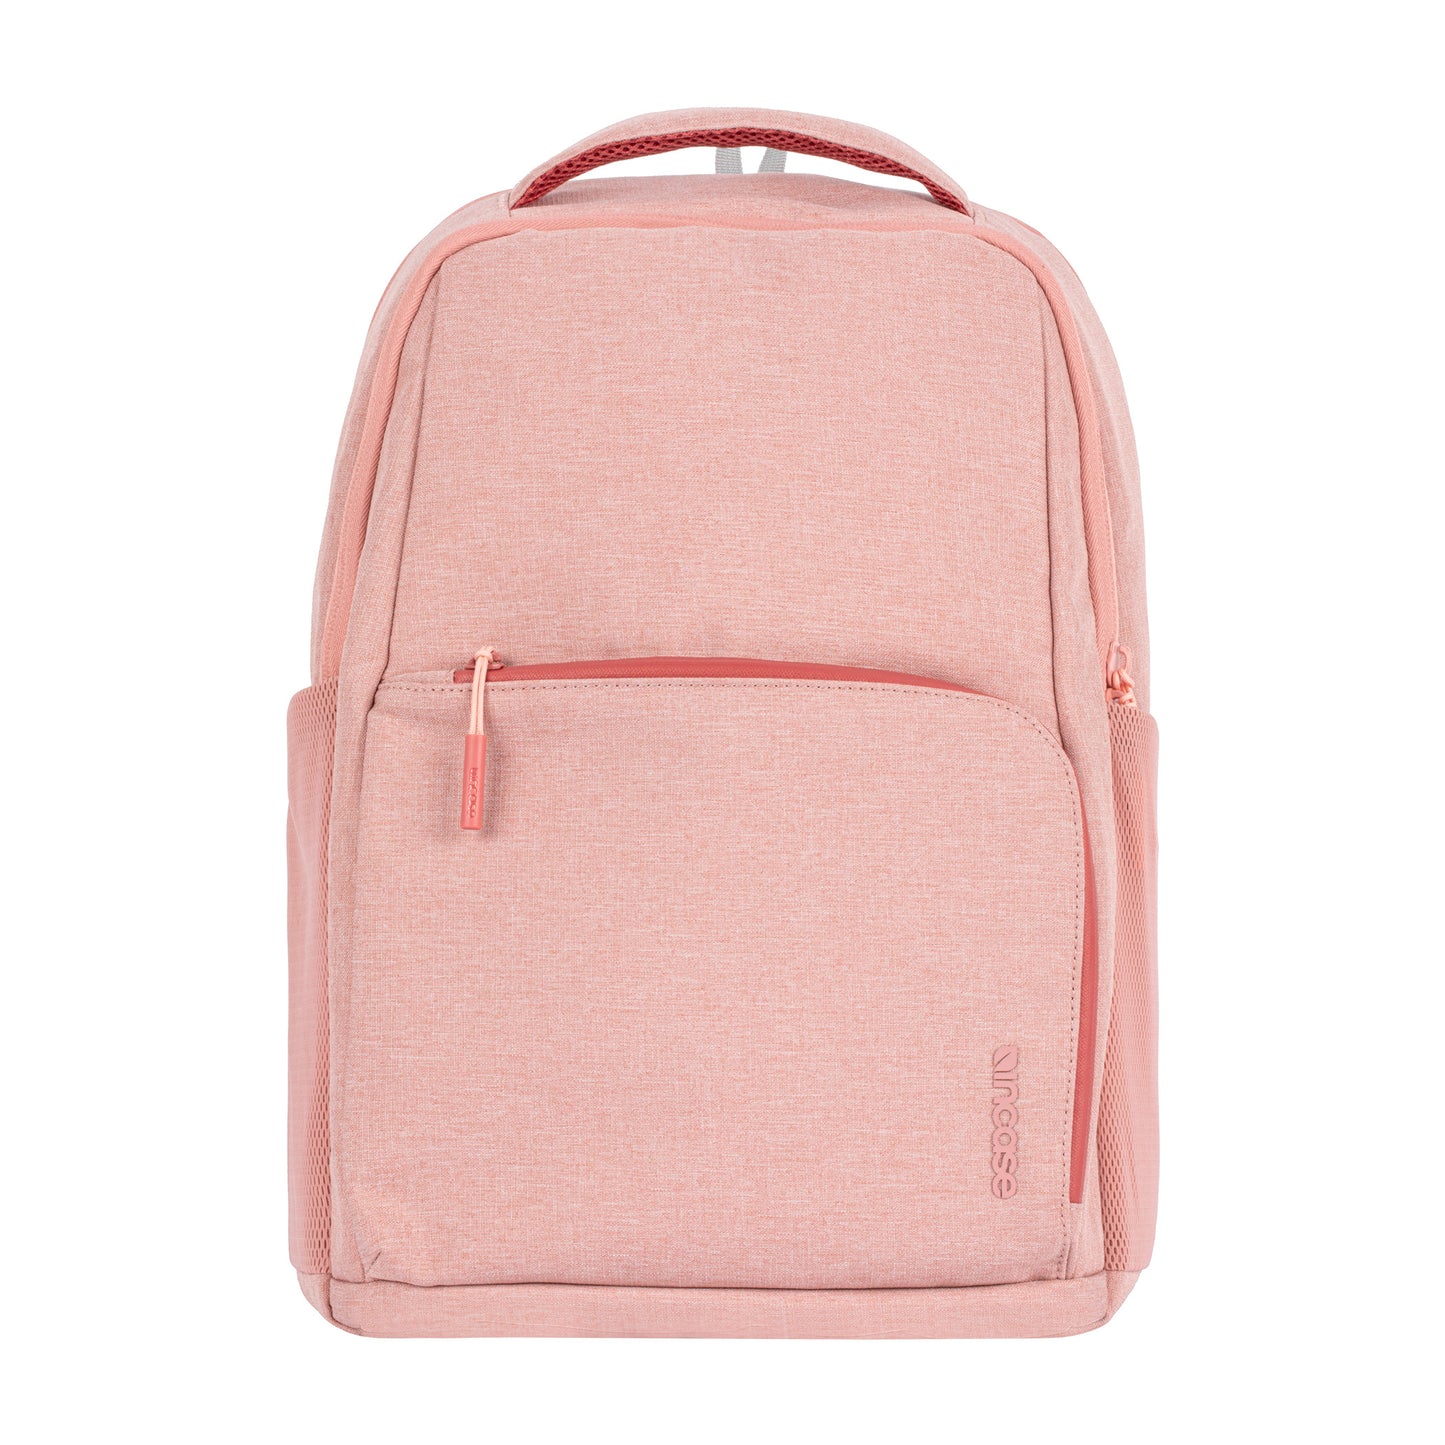 ファセット 20l バックパック(Facet 20L Backpack) - Pink(ピンク 